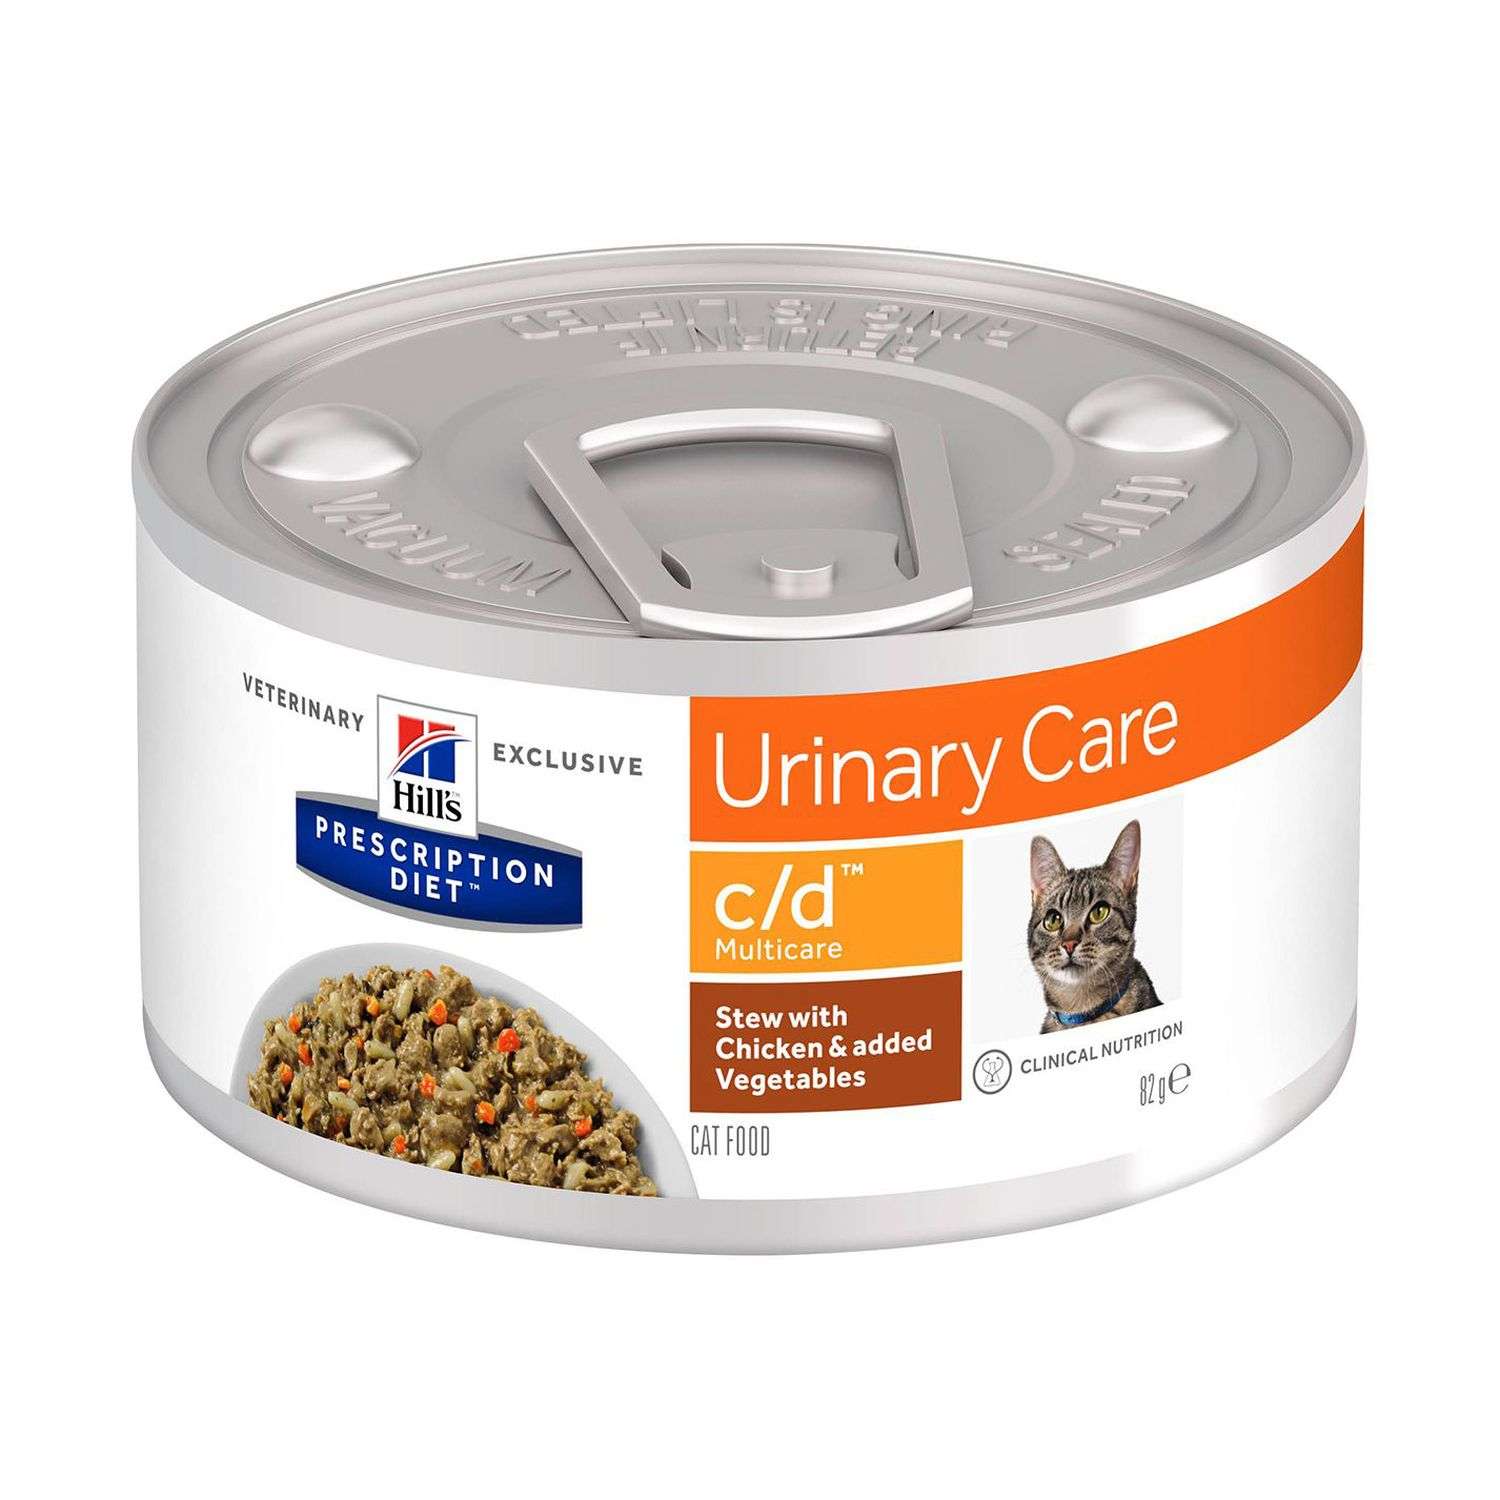 Корм для кошек HILLS 82г Prescription Diet c/d Multicare Urinary Care рагу с курицей и овощами - фото 1